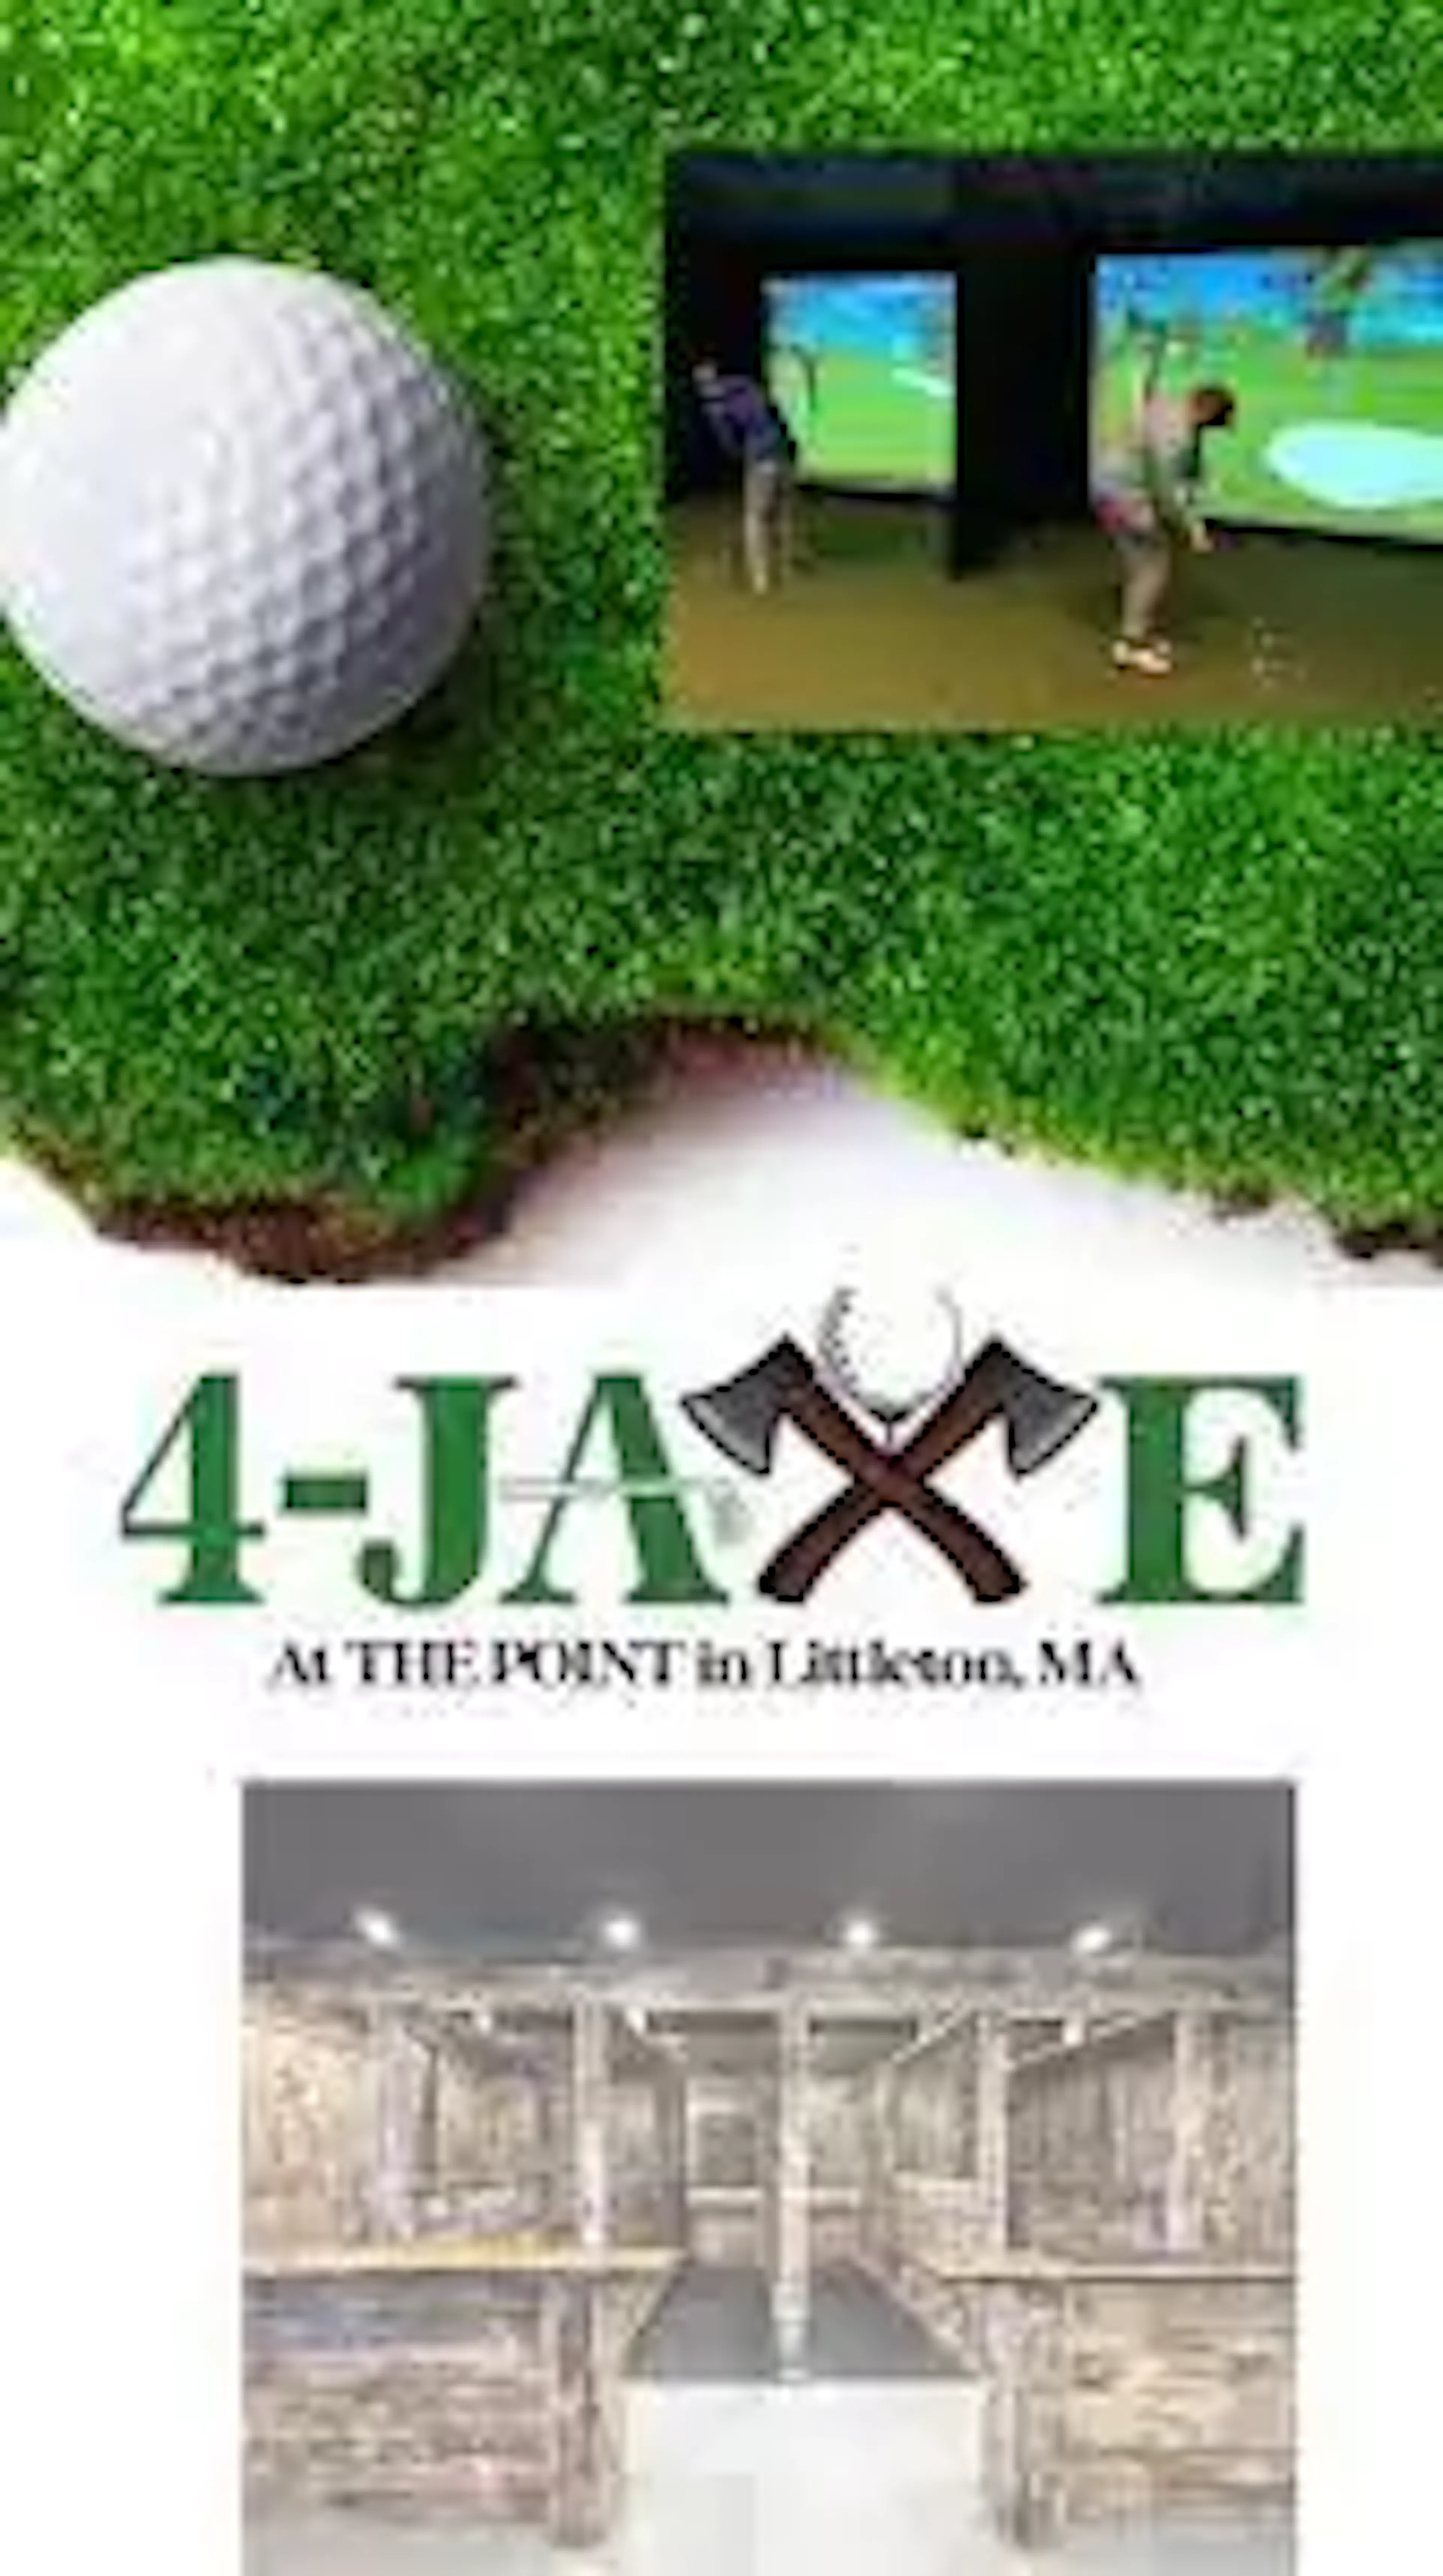 4-jaxe sports bar